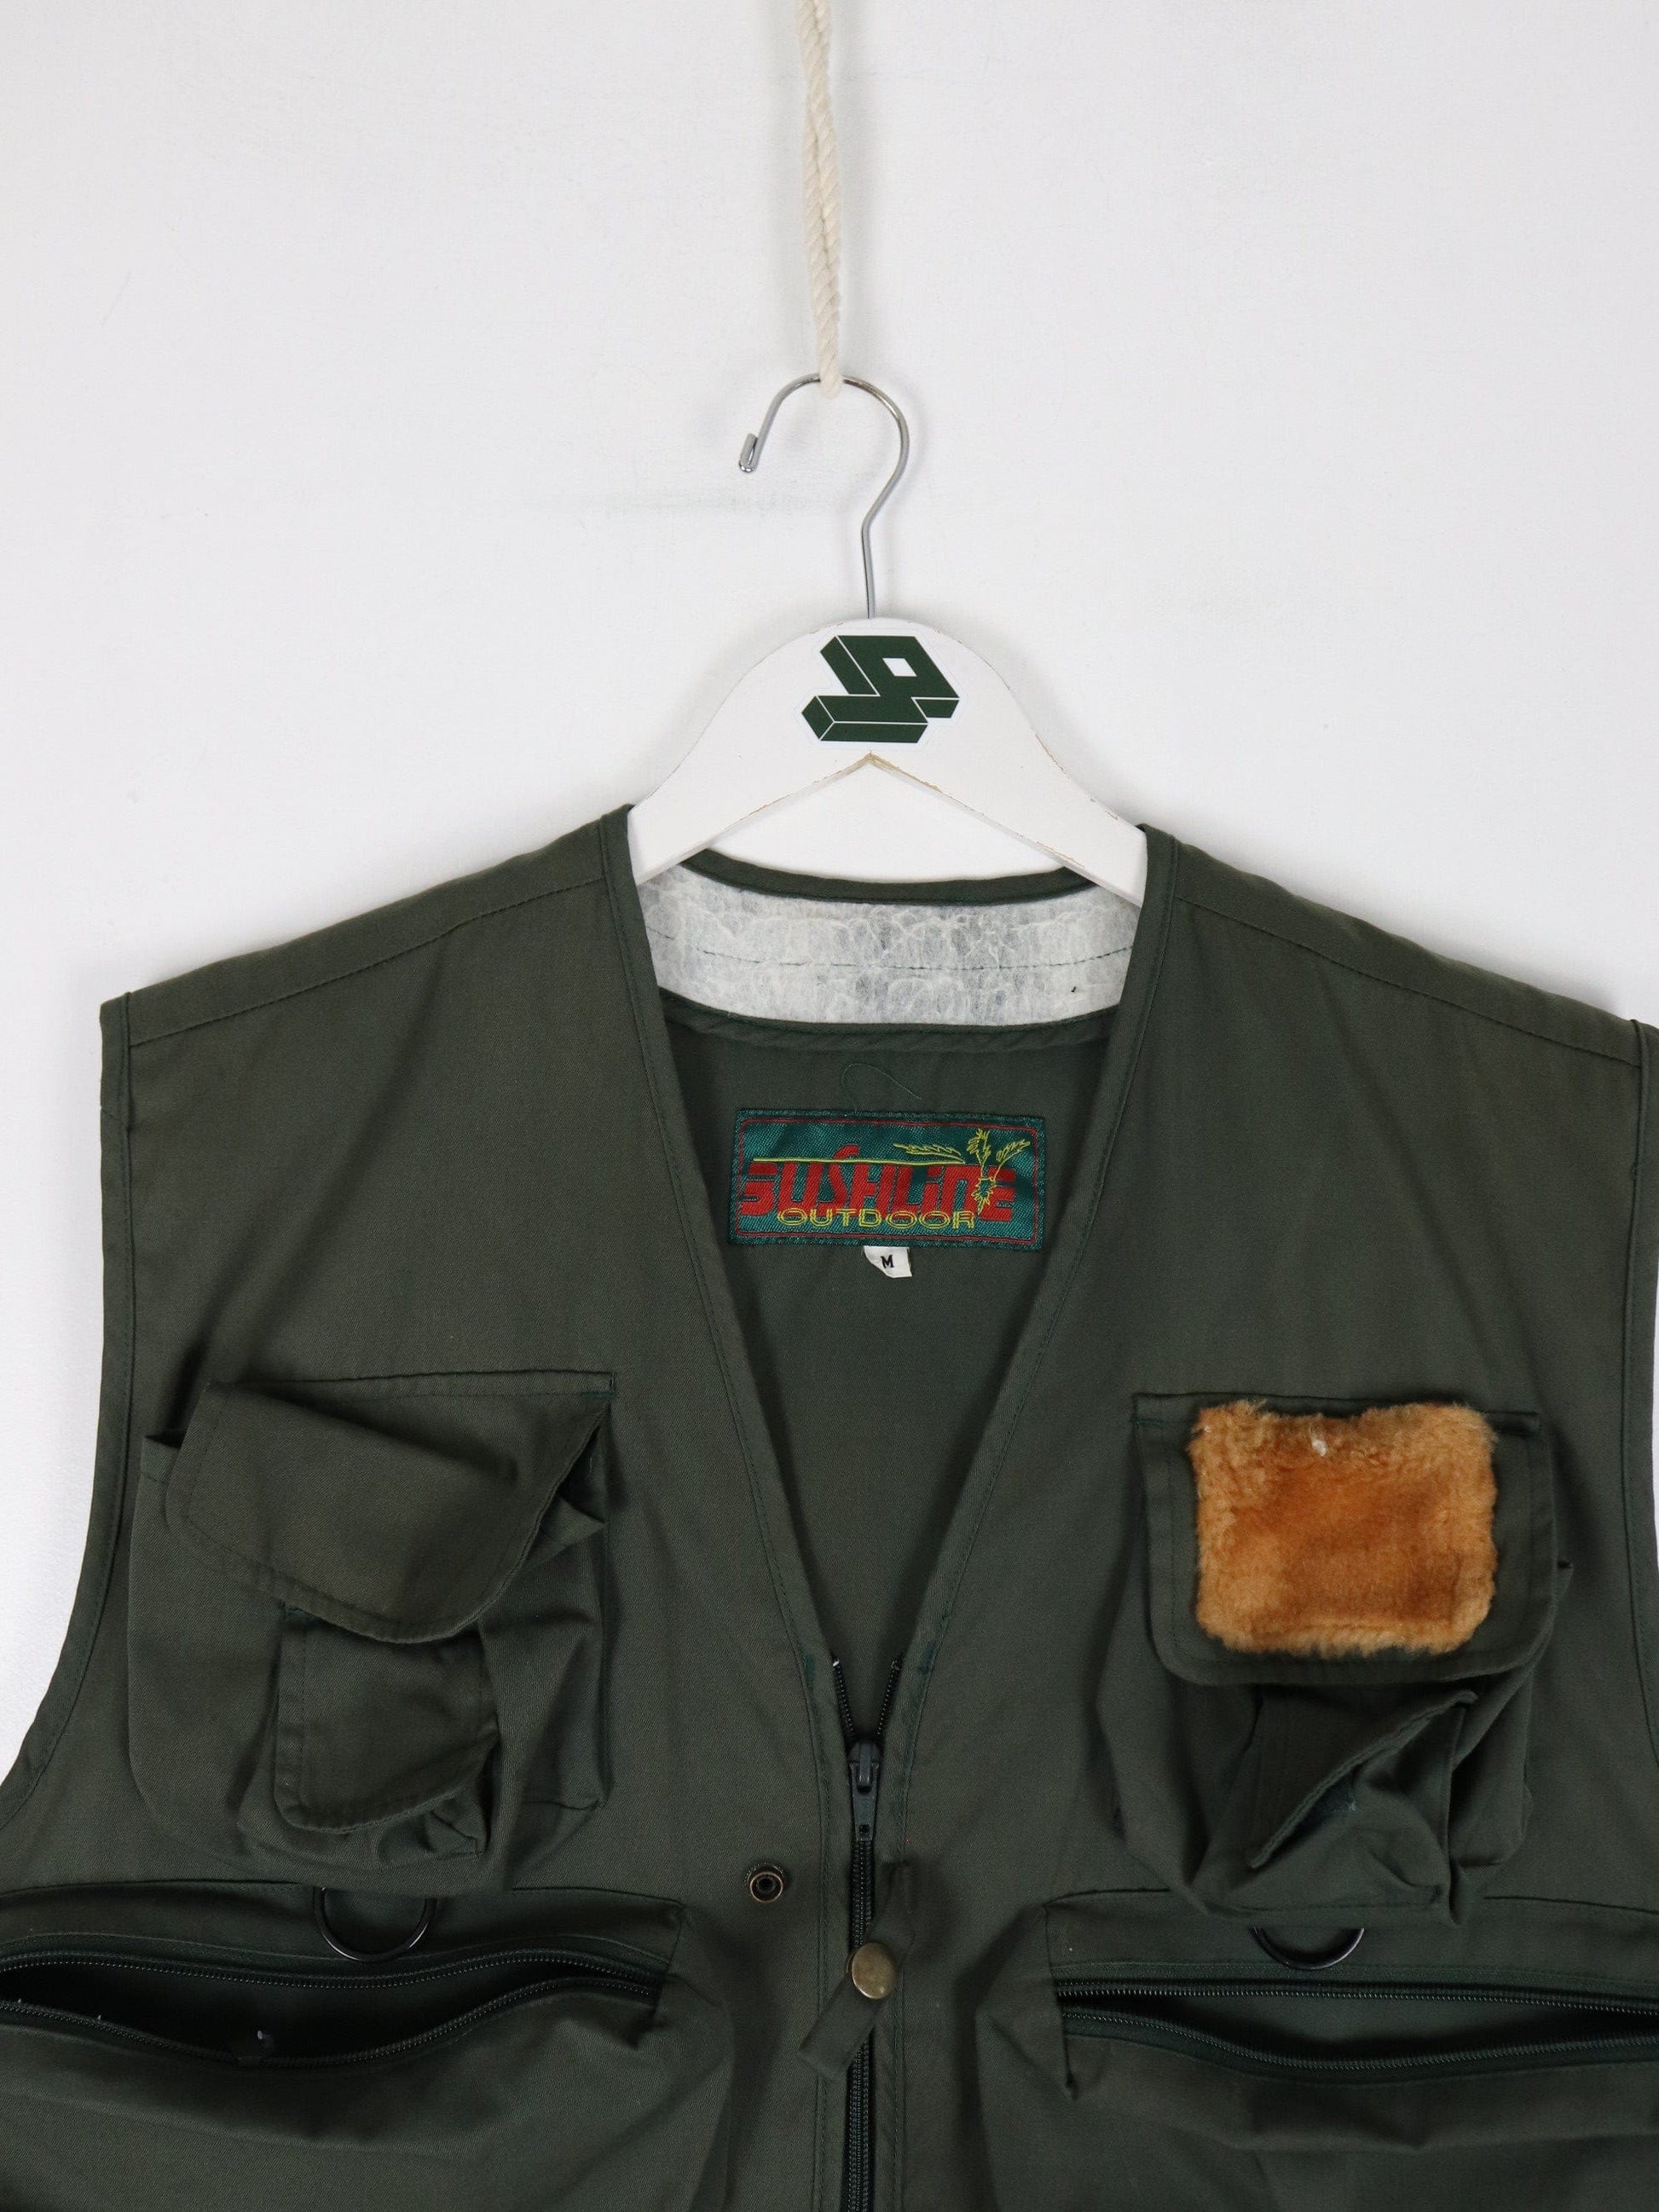 Vintage Bushline Outdoors Vest Mens Medium Green Jacket Hunting